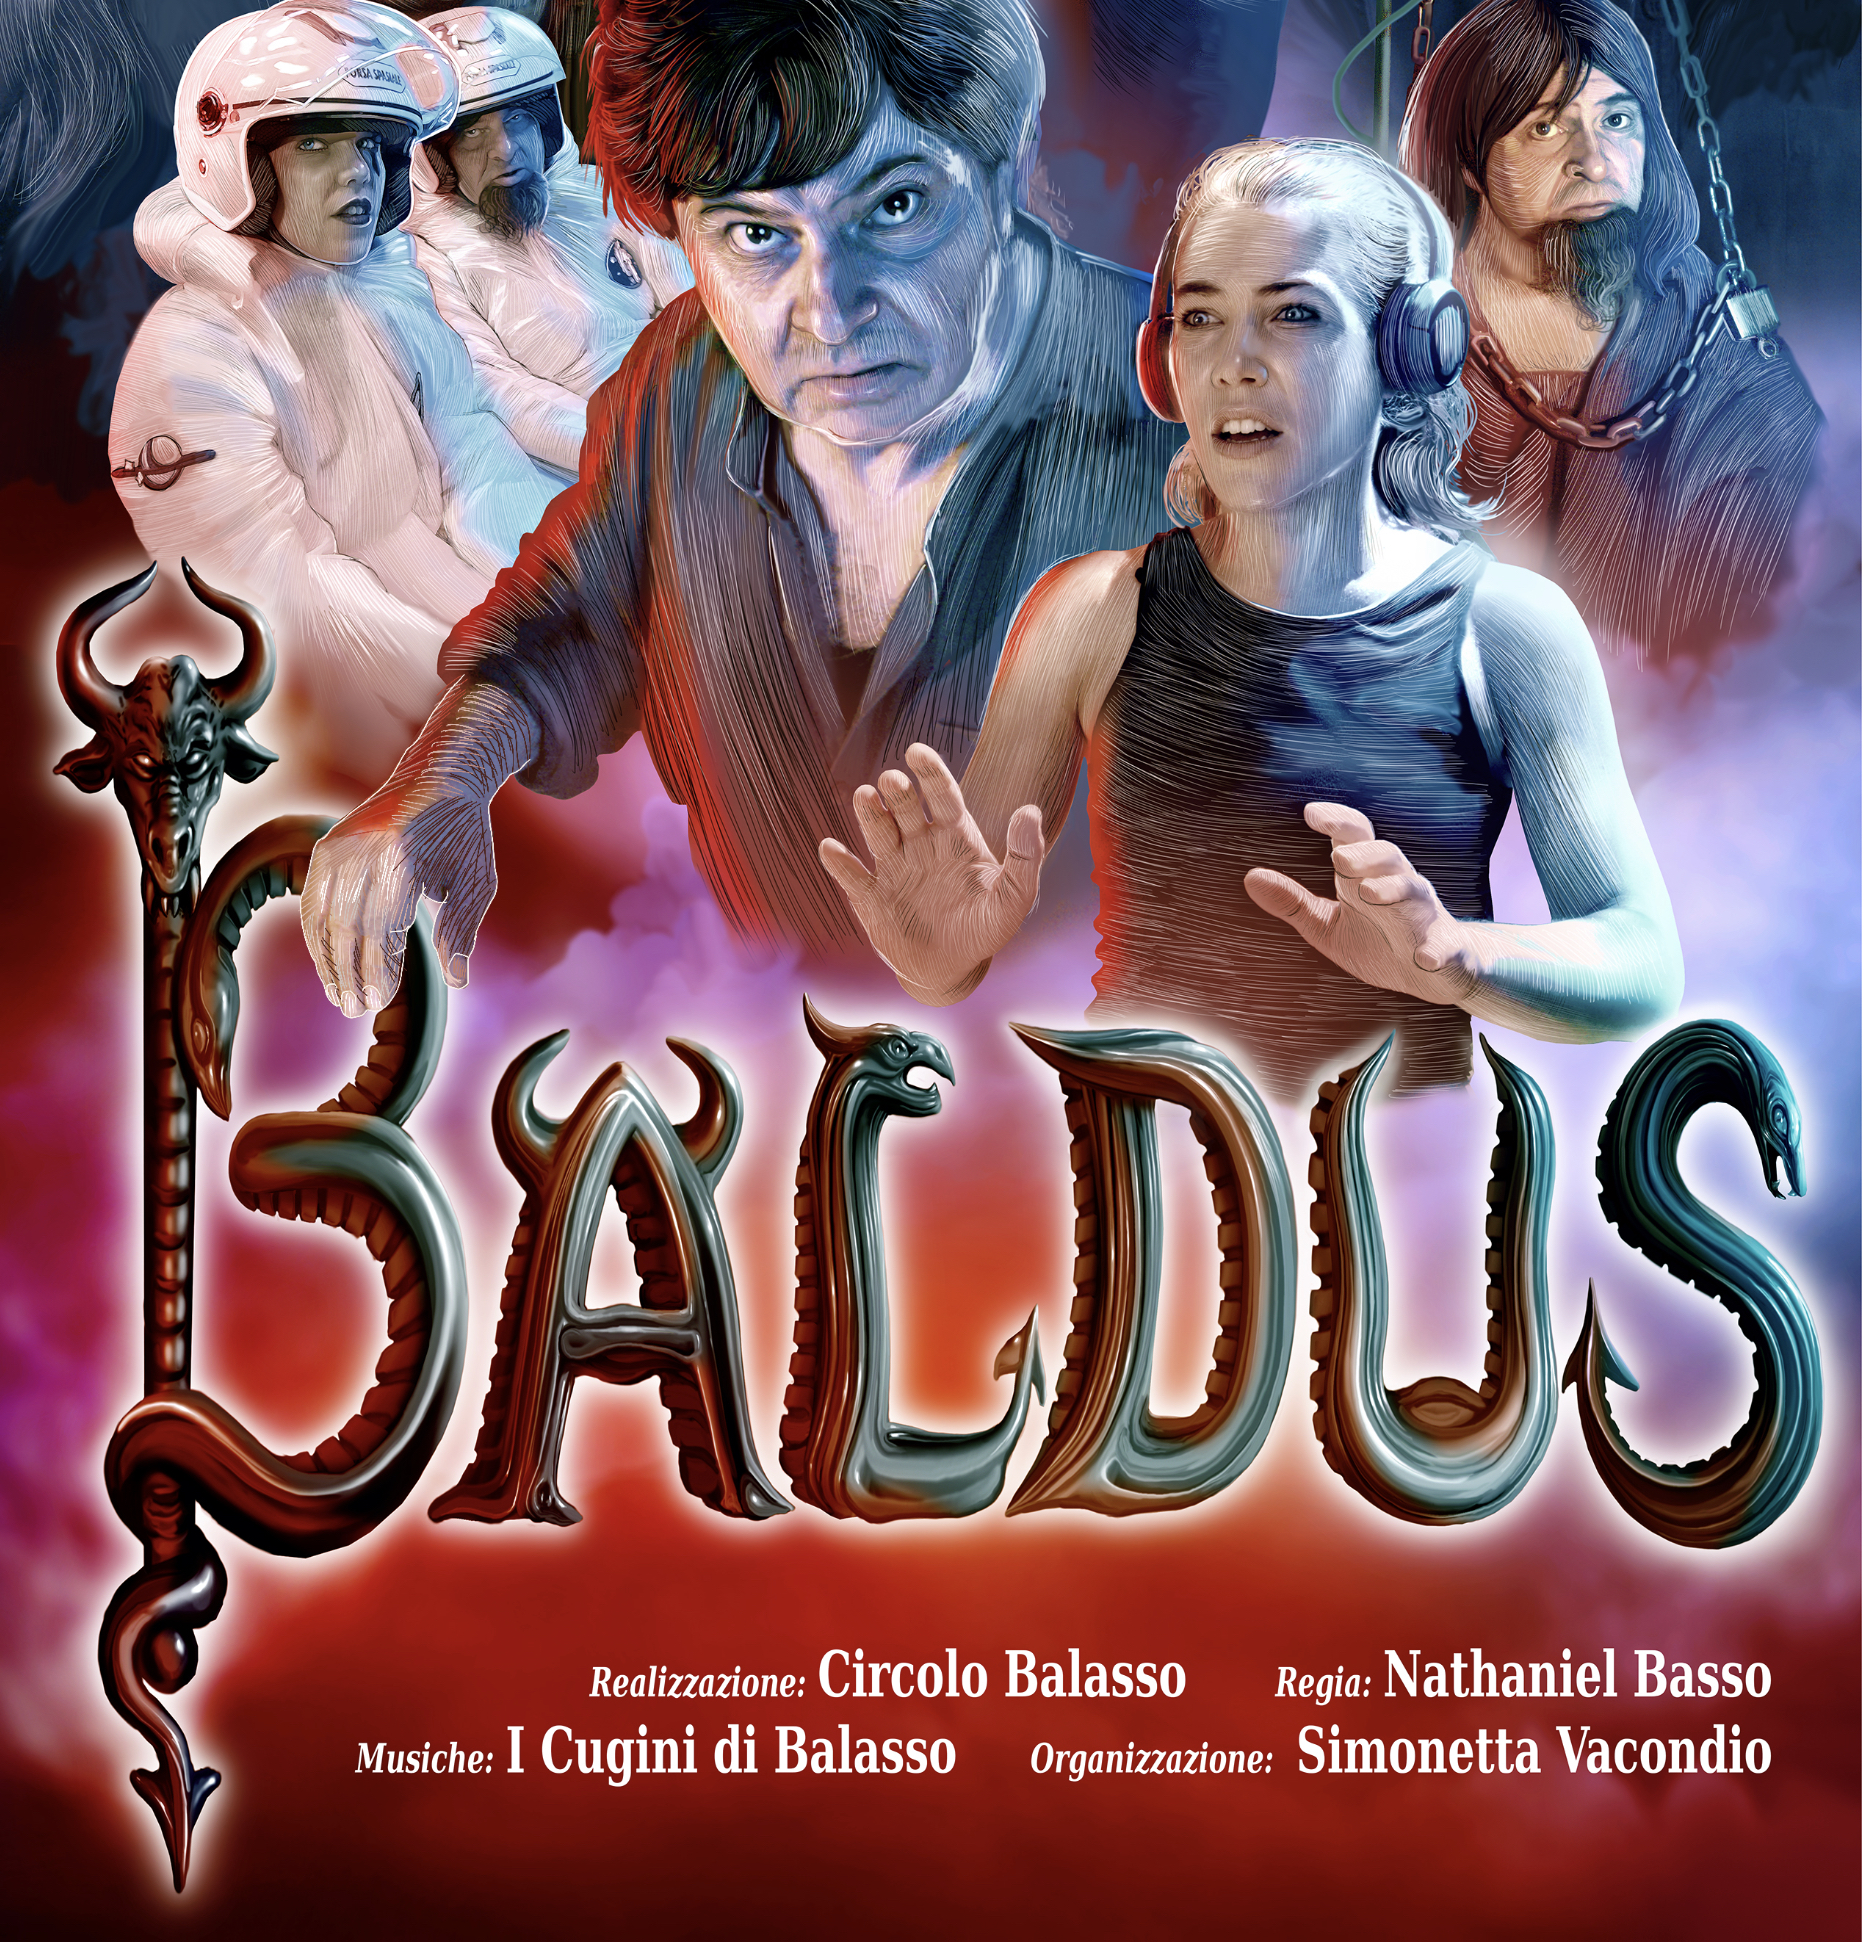 BALDUS, il nuovo contro-film di Natale